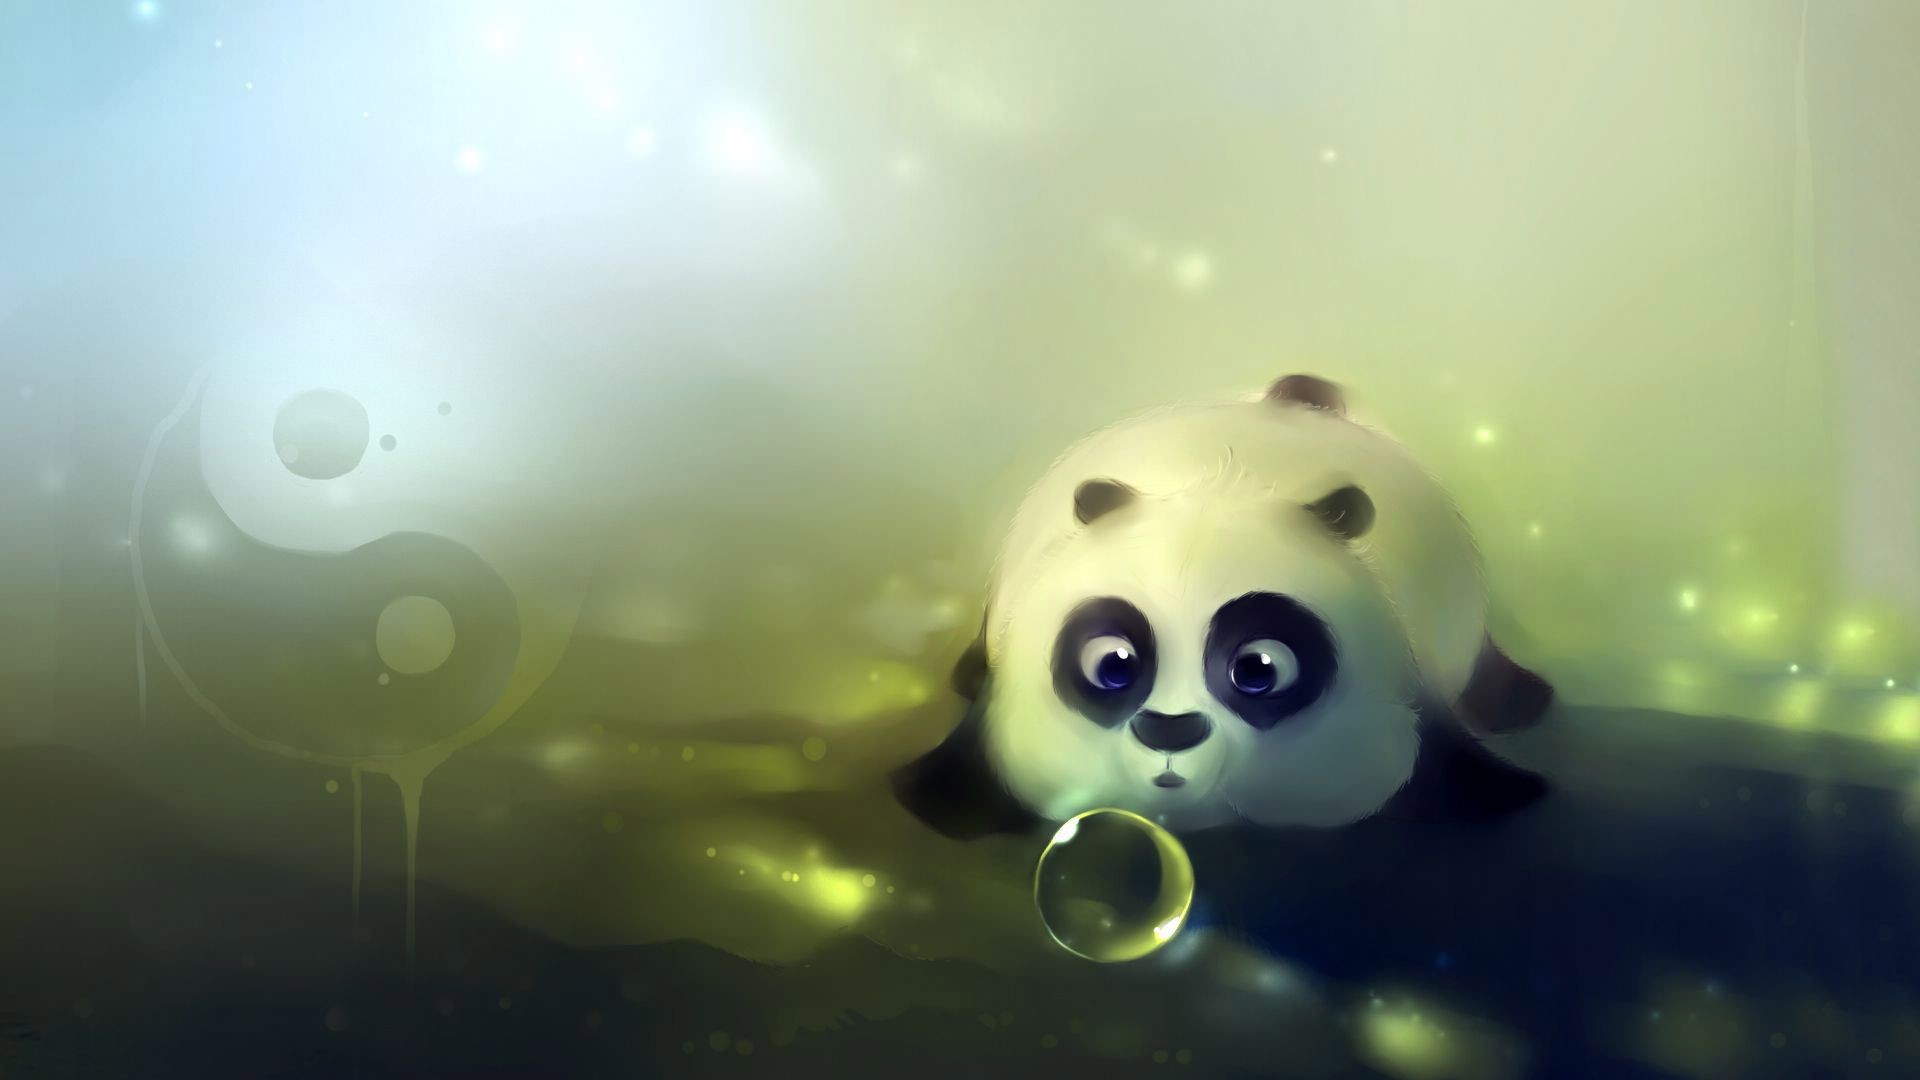 21+] Cute Panda PC Wallpapers - WallpaperSafari